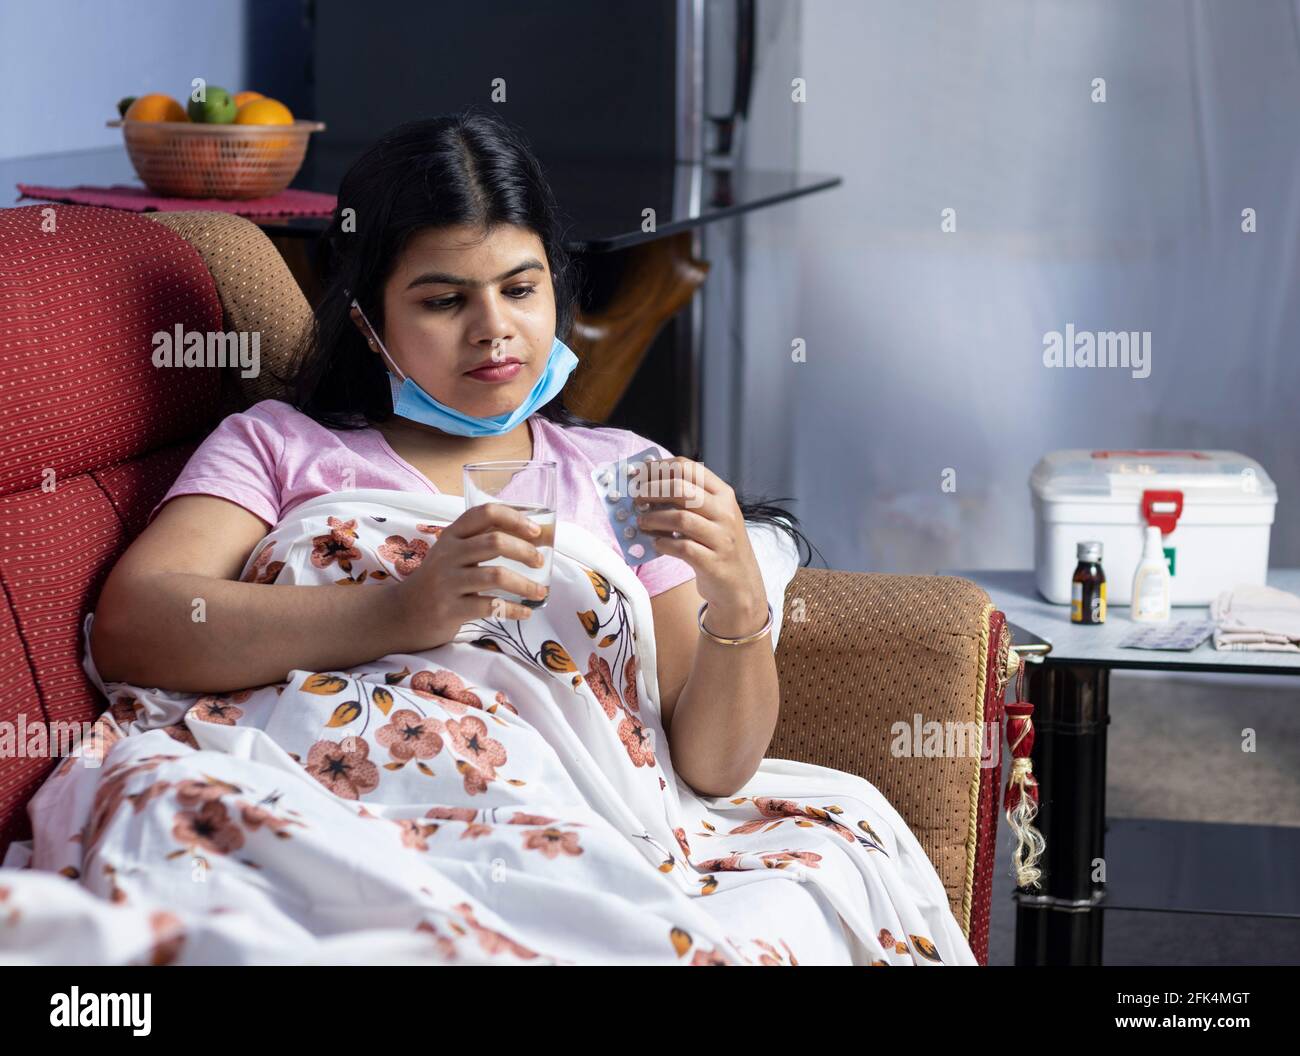 Eine indische Frau mit mittlerem Erwachsenen, die eine chirurgische Nasenmaske trägt, auf dem Sofa liegt, Medikamente nimmt, Gesundheitskonzept Stockfoto